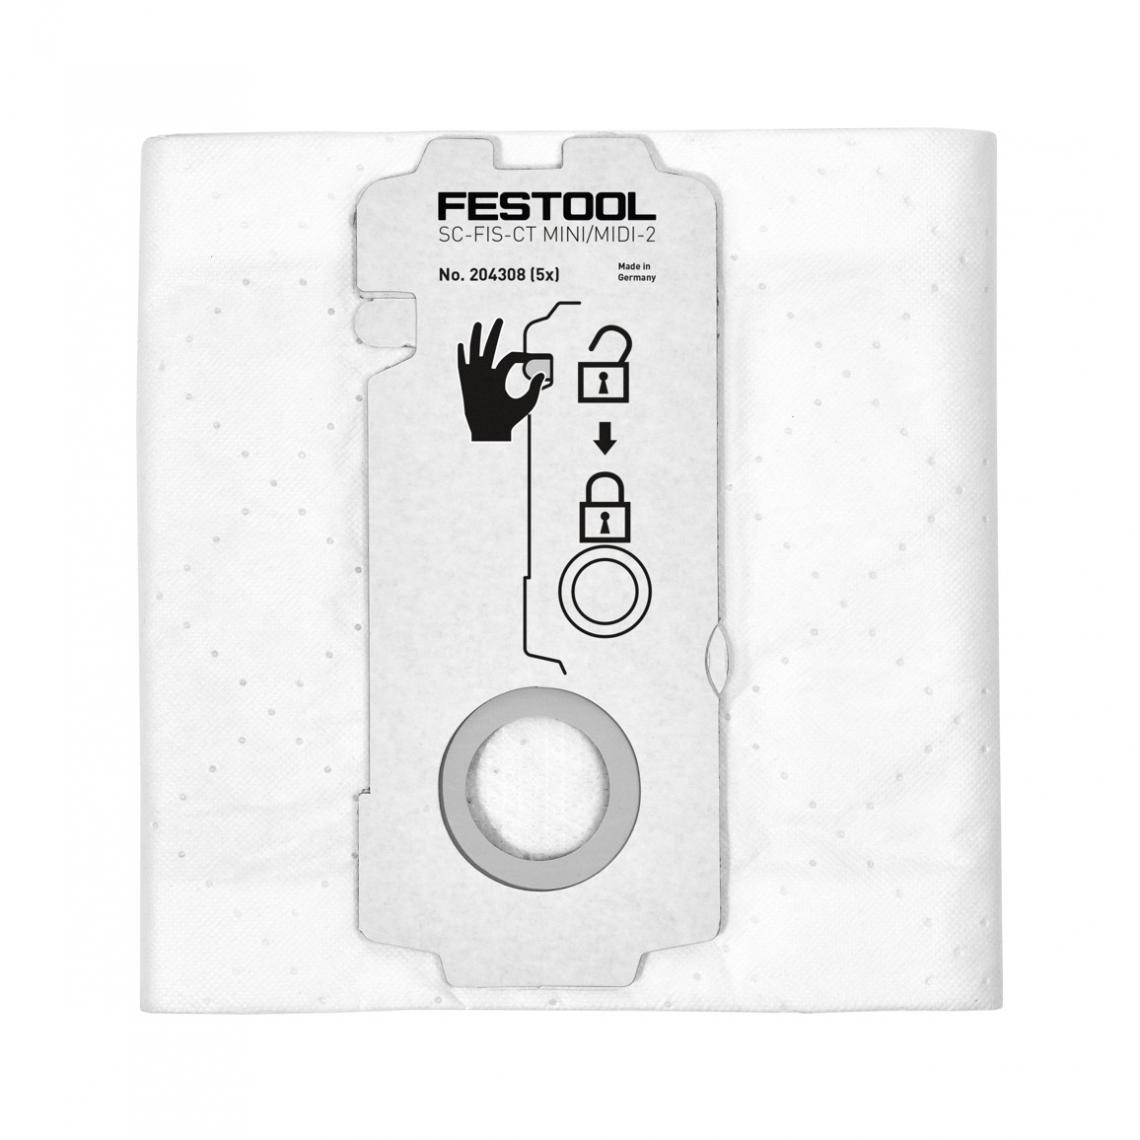 Festool - Festool SELFCLEAN SC-FIS-CT MINI/MIDI-2/25 Set de Sacs filtres ( 204308 ) pour aspirateurs mobiles CT MINI et CT MIDI à partir de l'année de fabrication 2019 - 25 Pièces - Accessoire entretien des sols